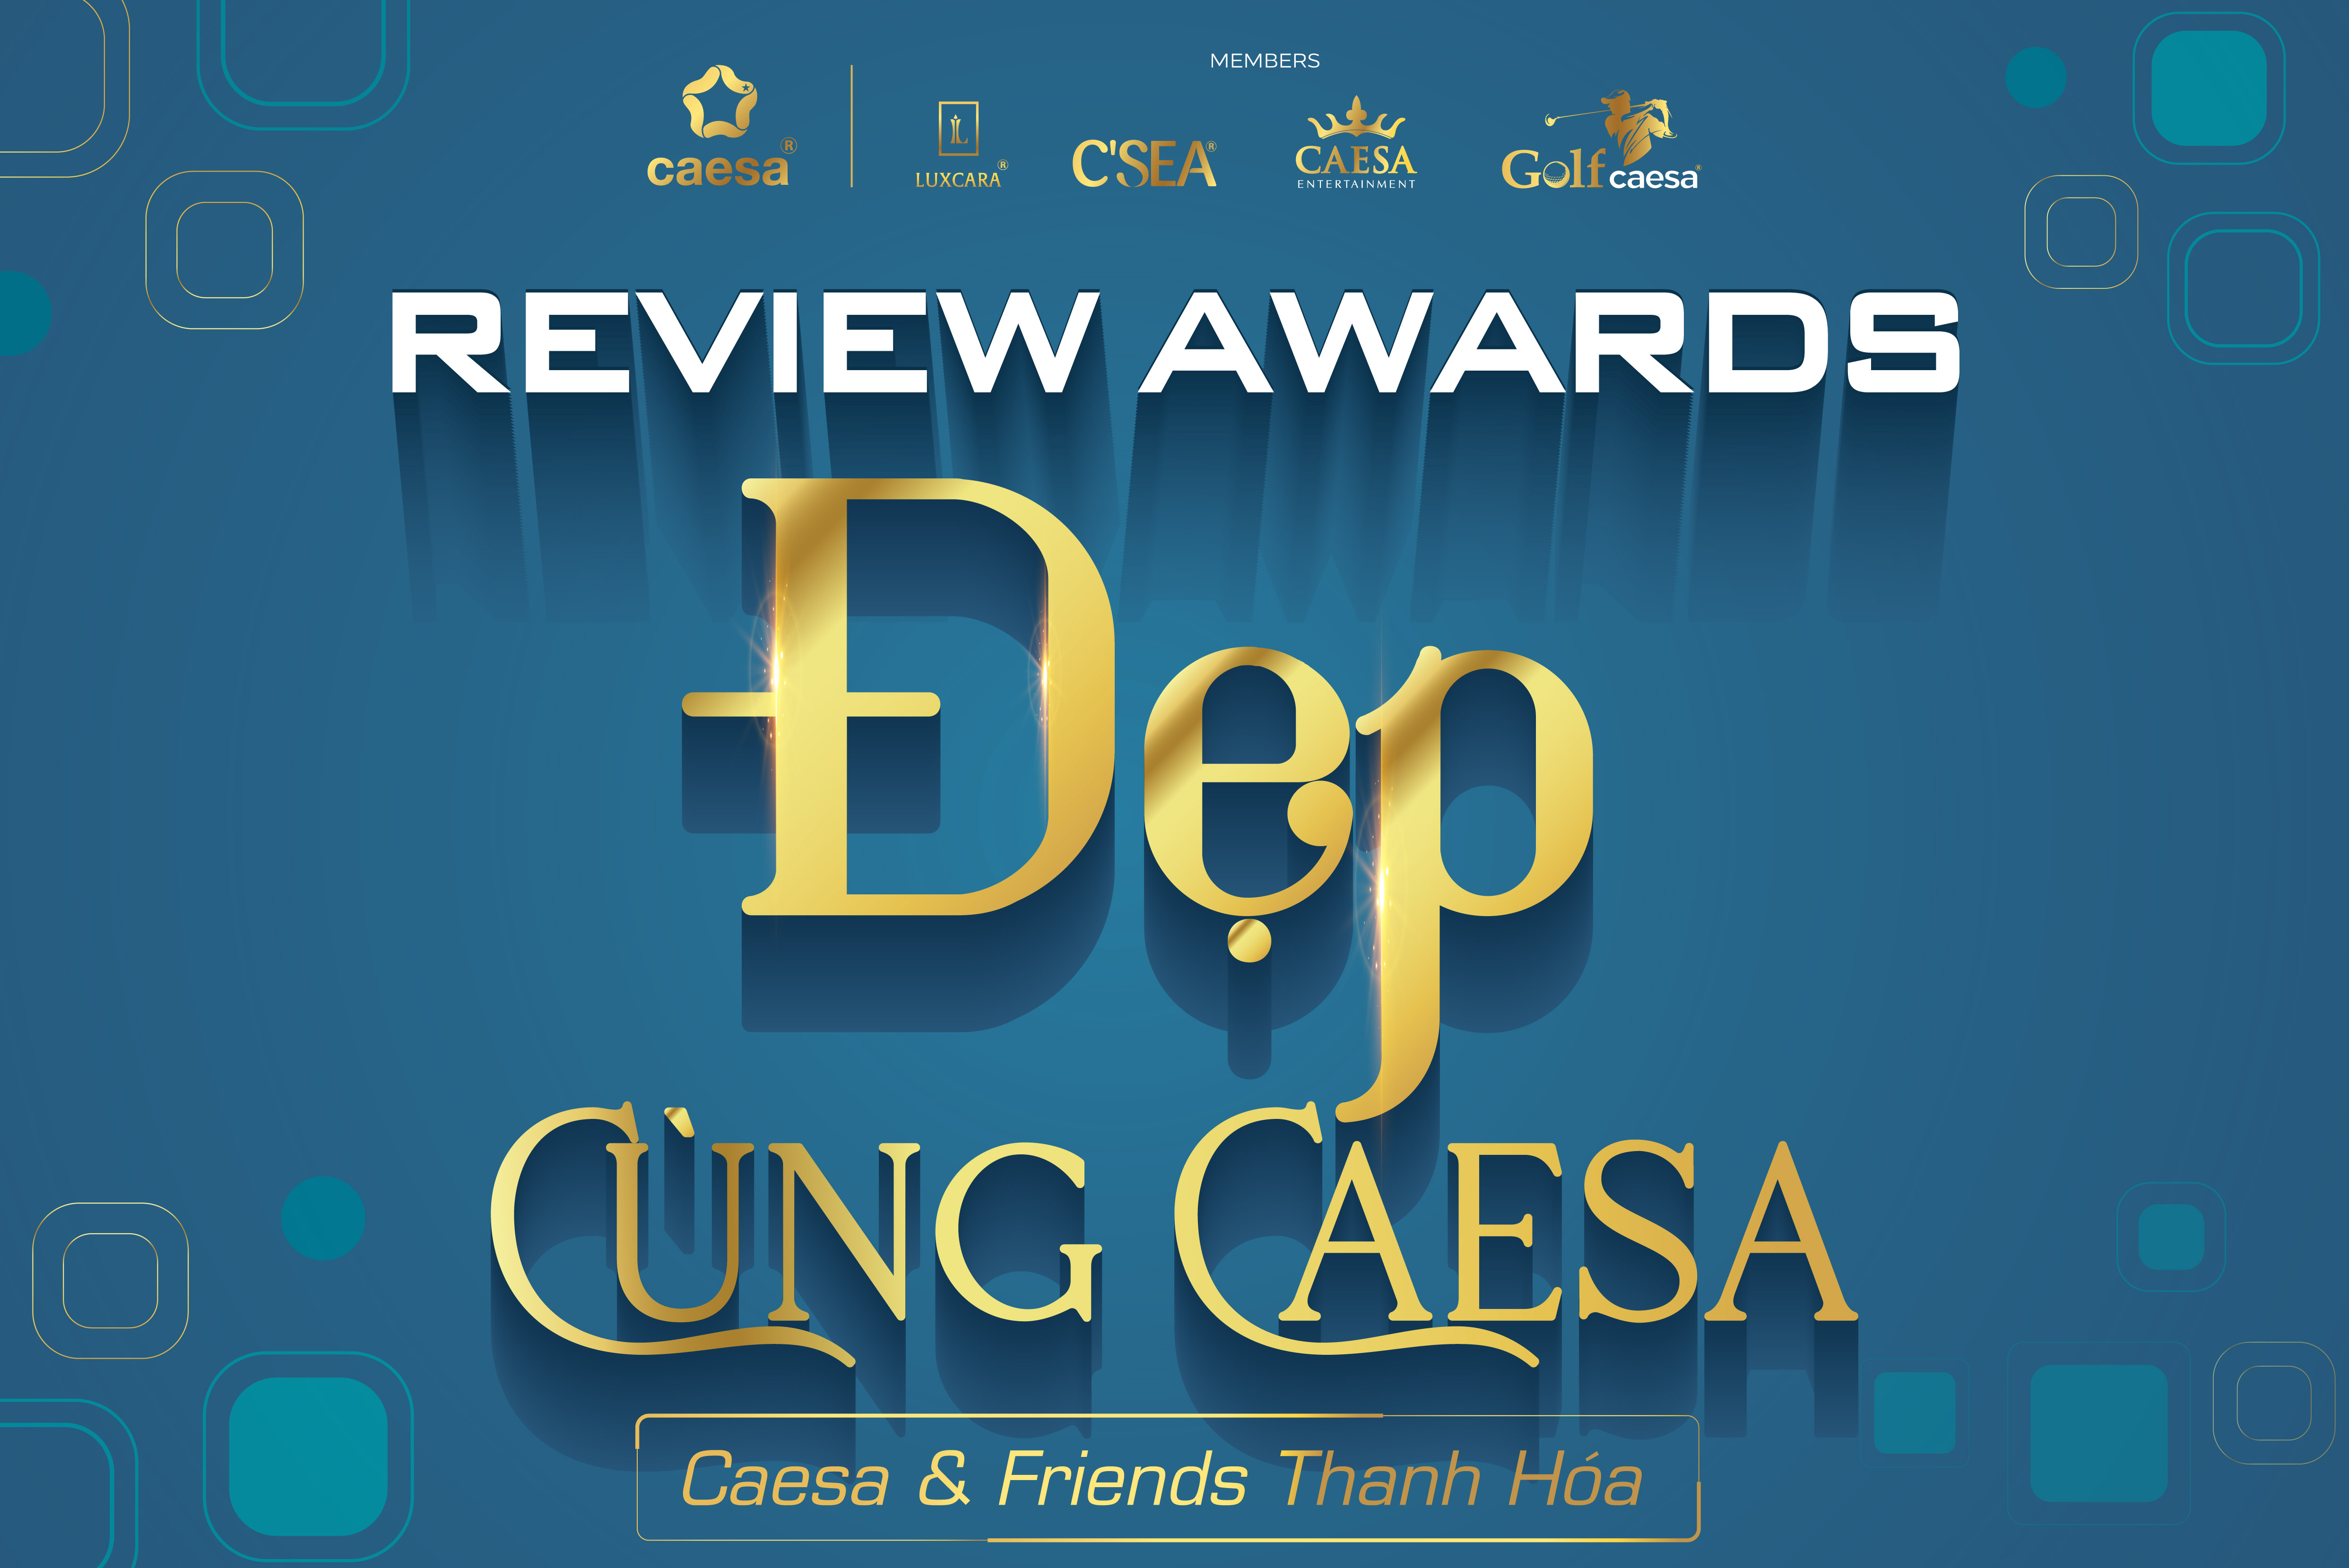 Reviews “Đẹp cùng Caesa” hấp dẫn và vỡ oà cảm xúc